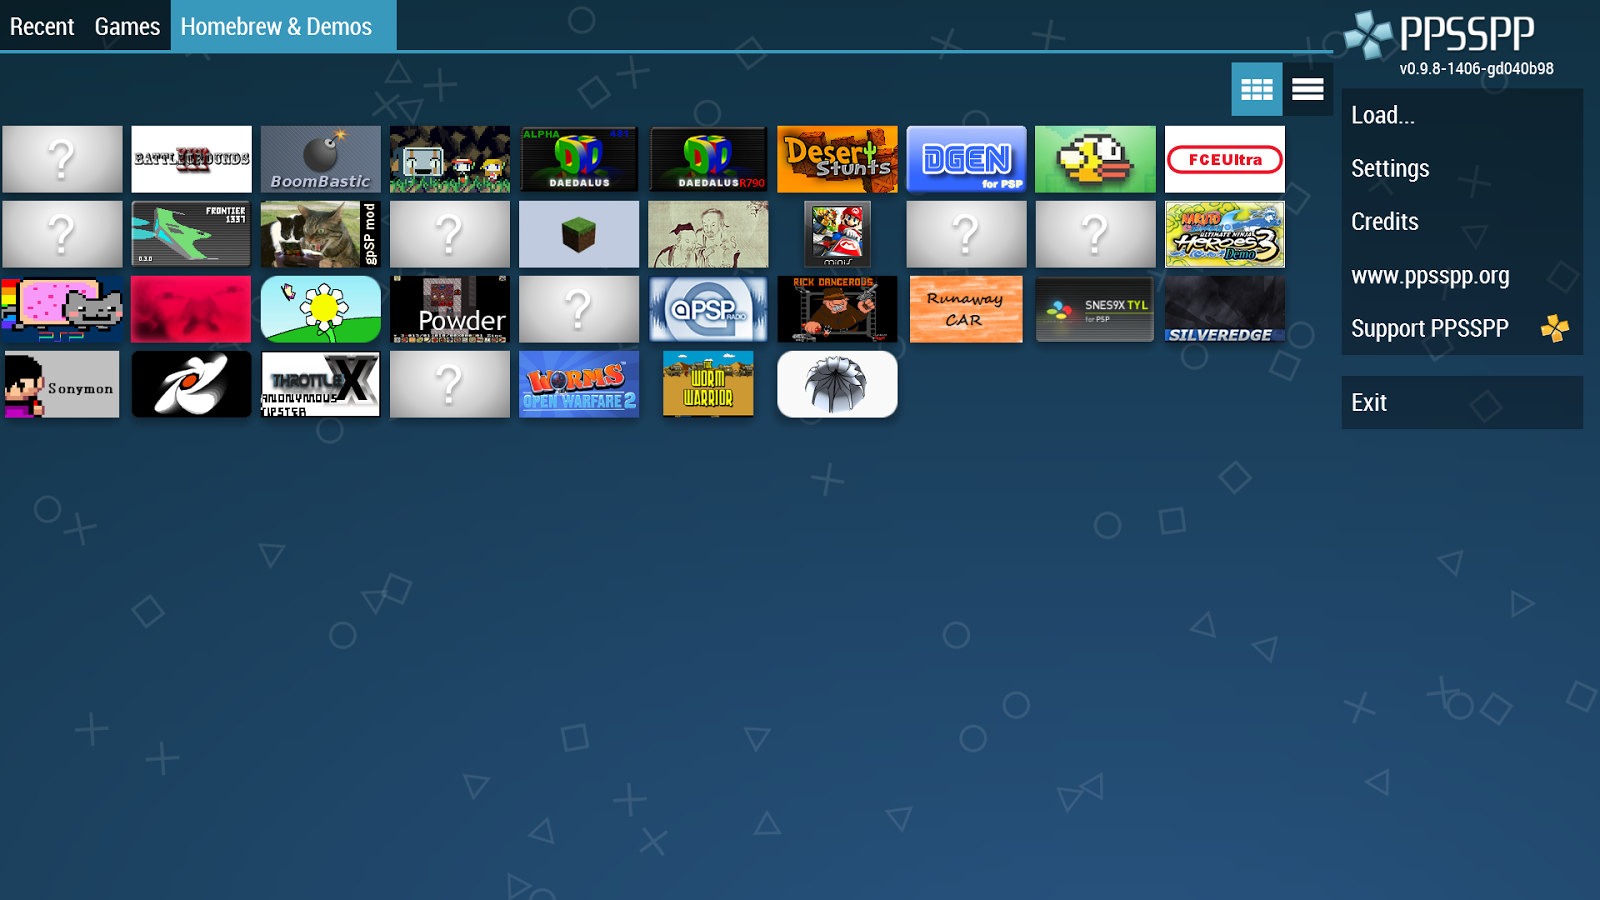    PPSSPP Gold - PSP emulator- screenshot  